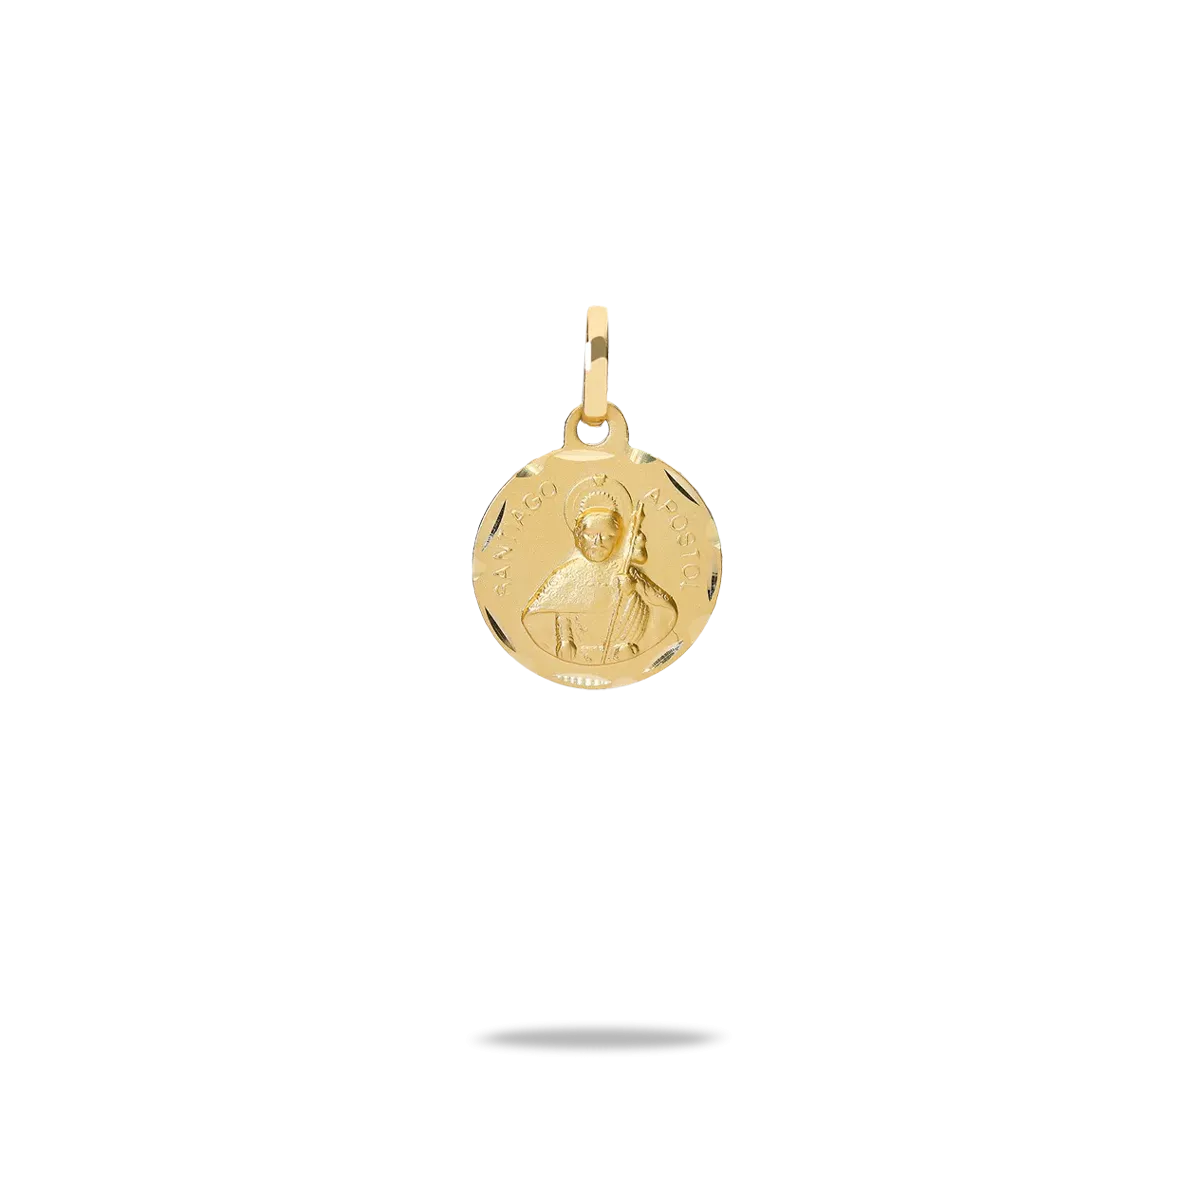 Medalla apostol santiago oro 18 quilates 14mm